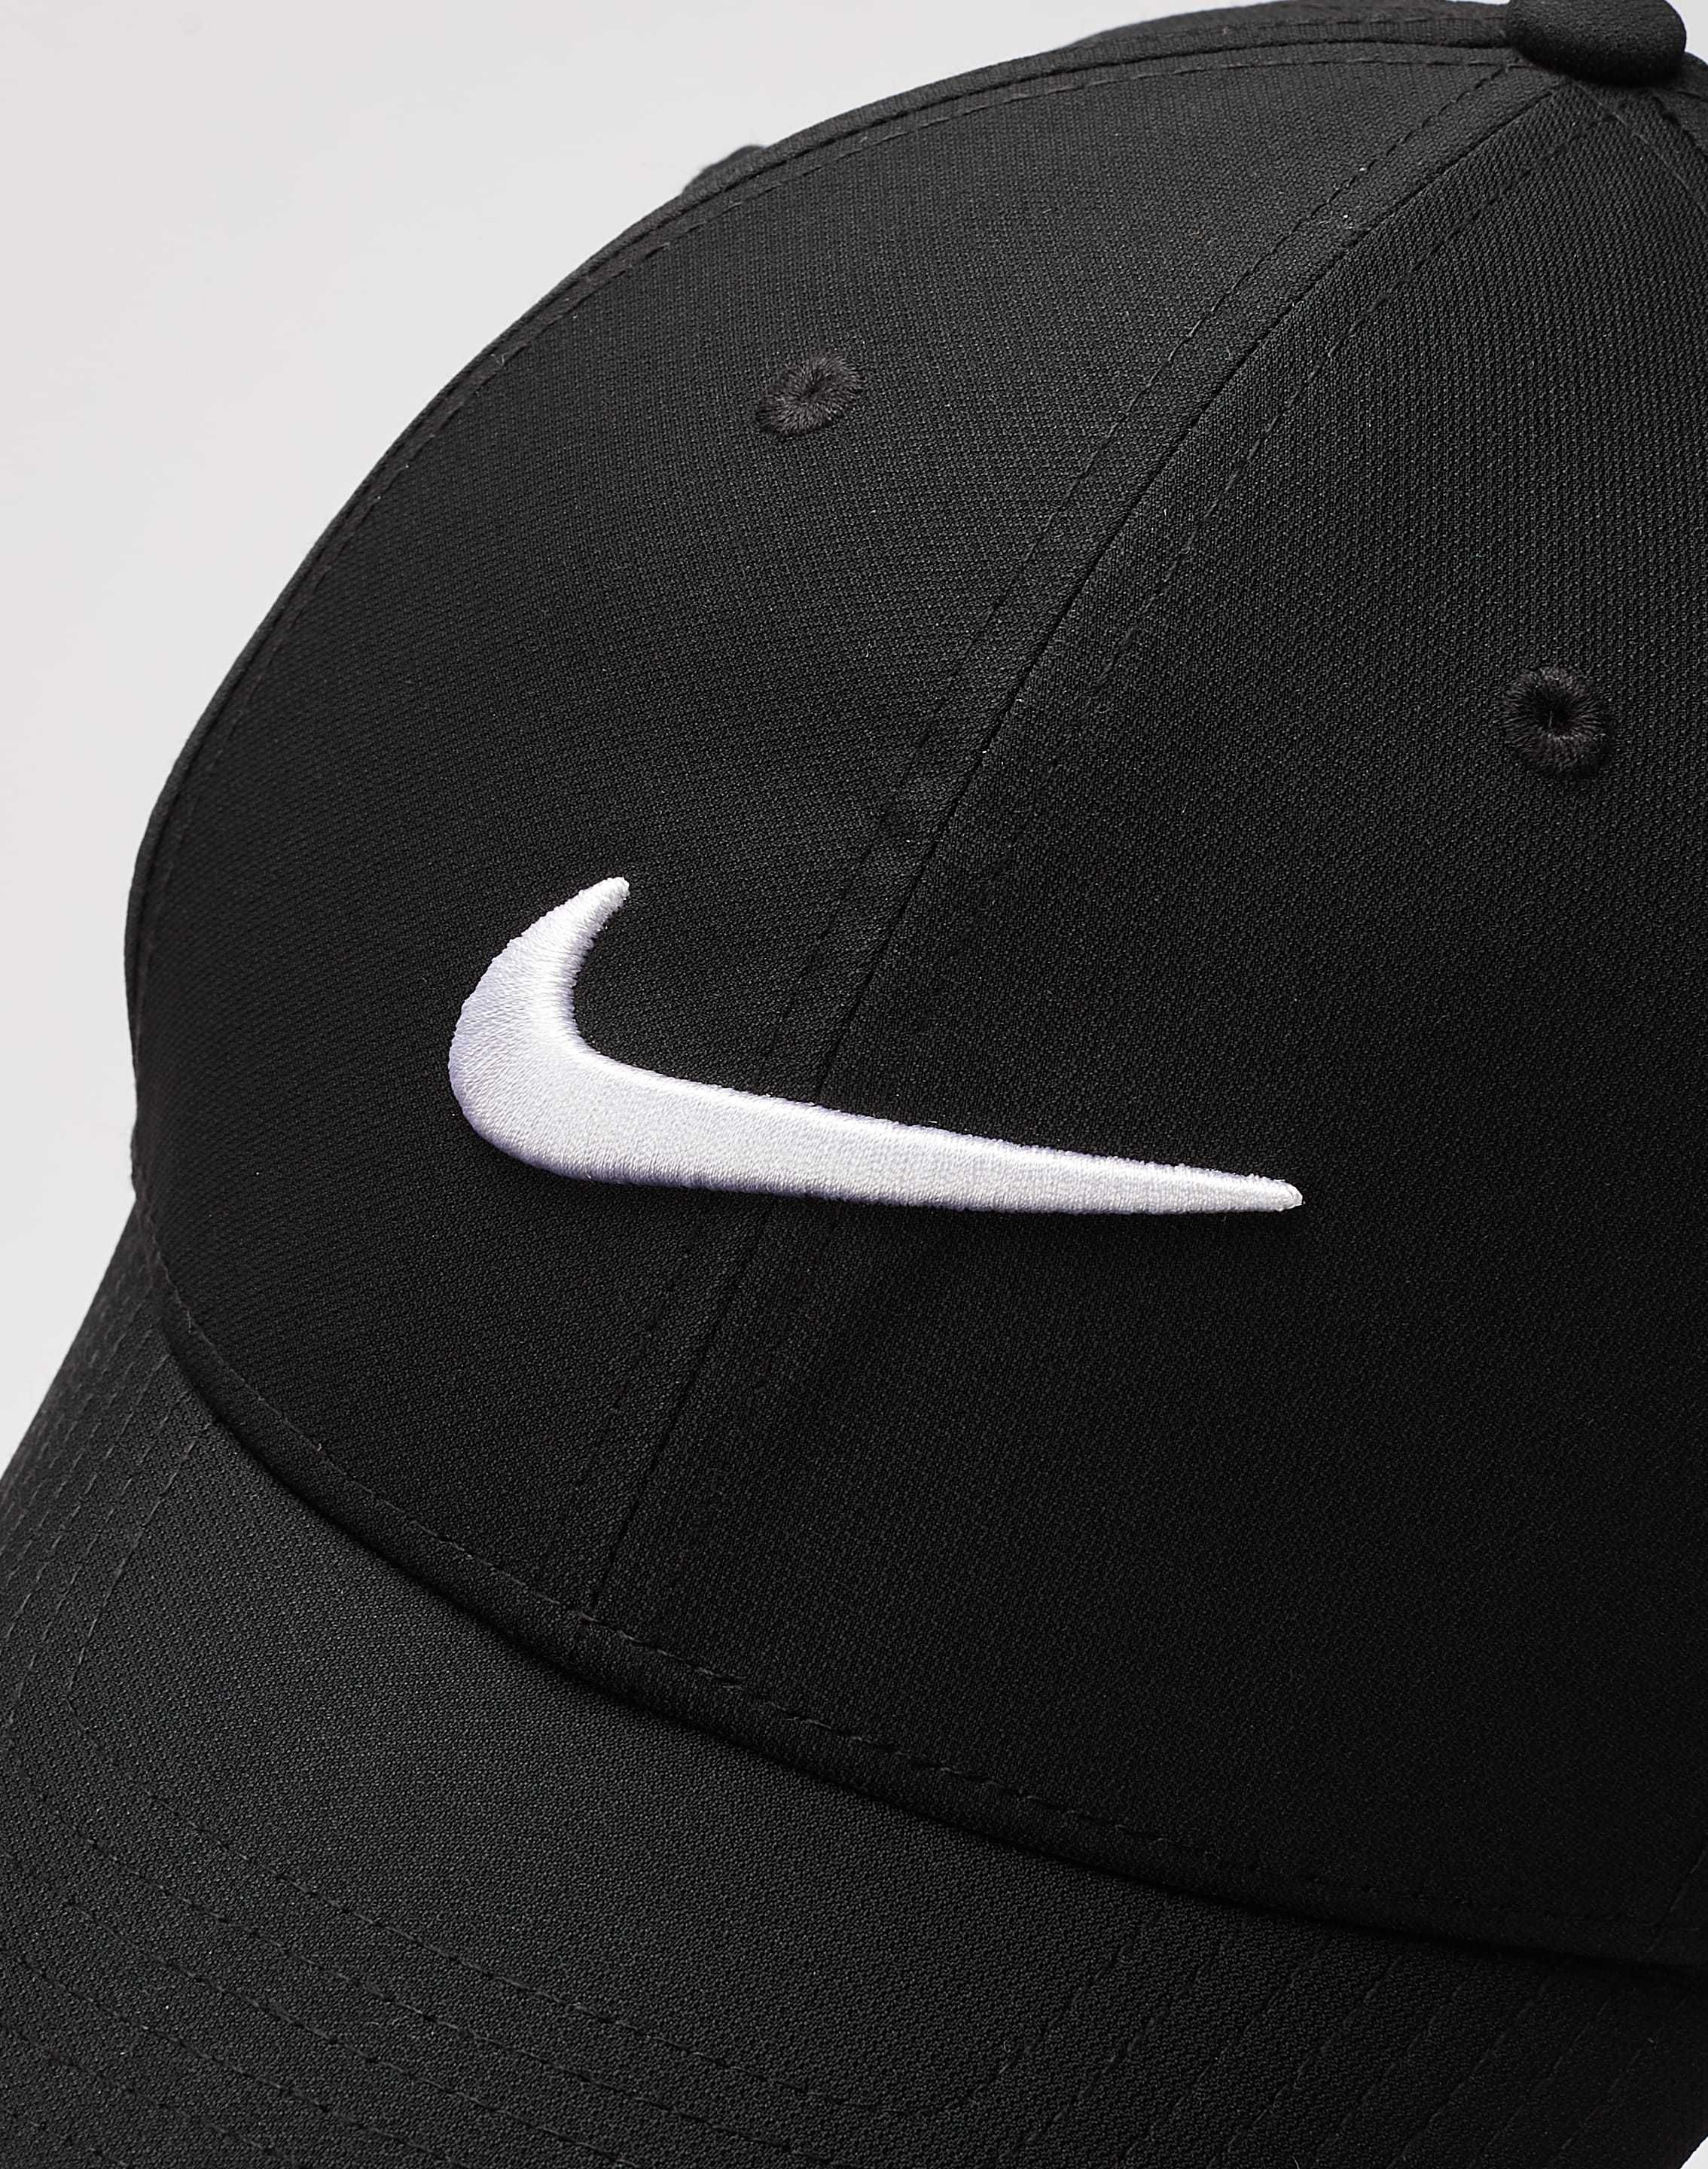 Кепка Nike Dri-Fit Club Cap (FB5625-010) оригинал